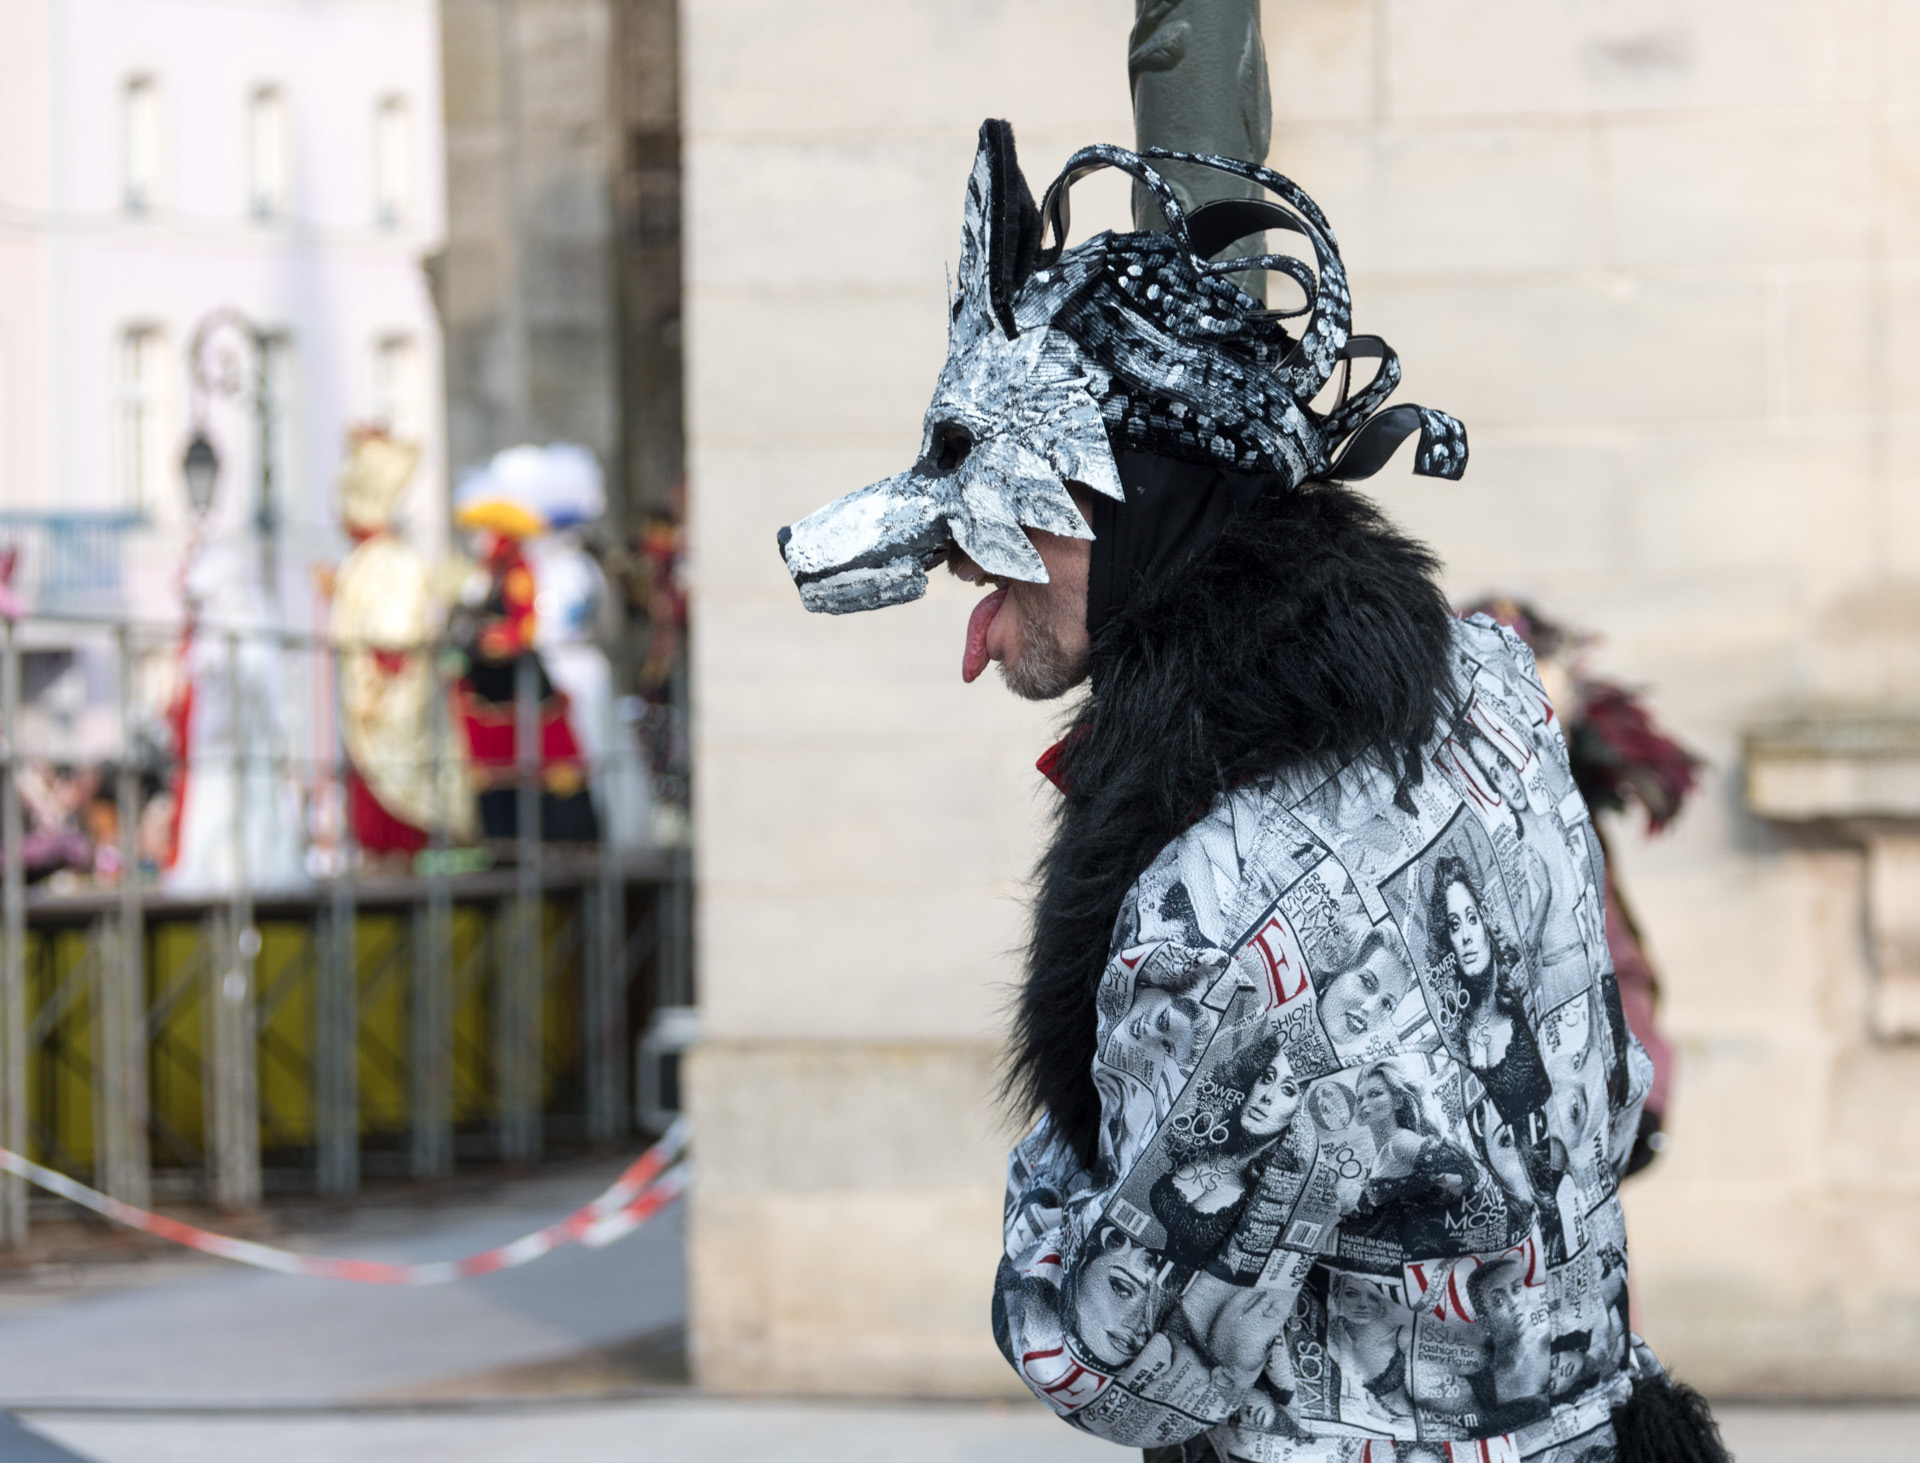 Costume de carnaval vénitien